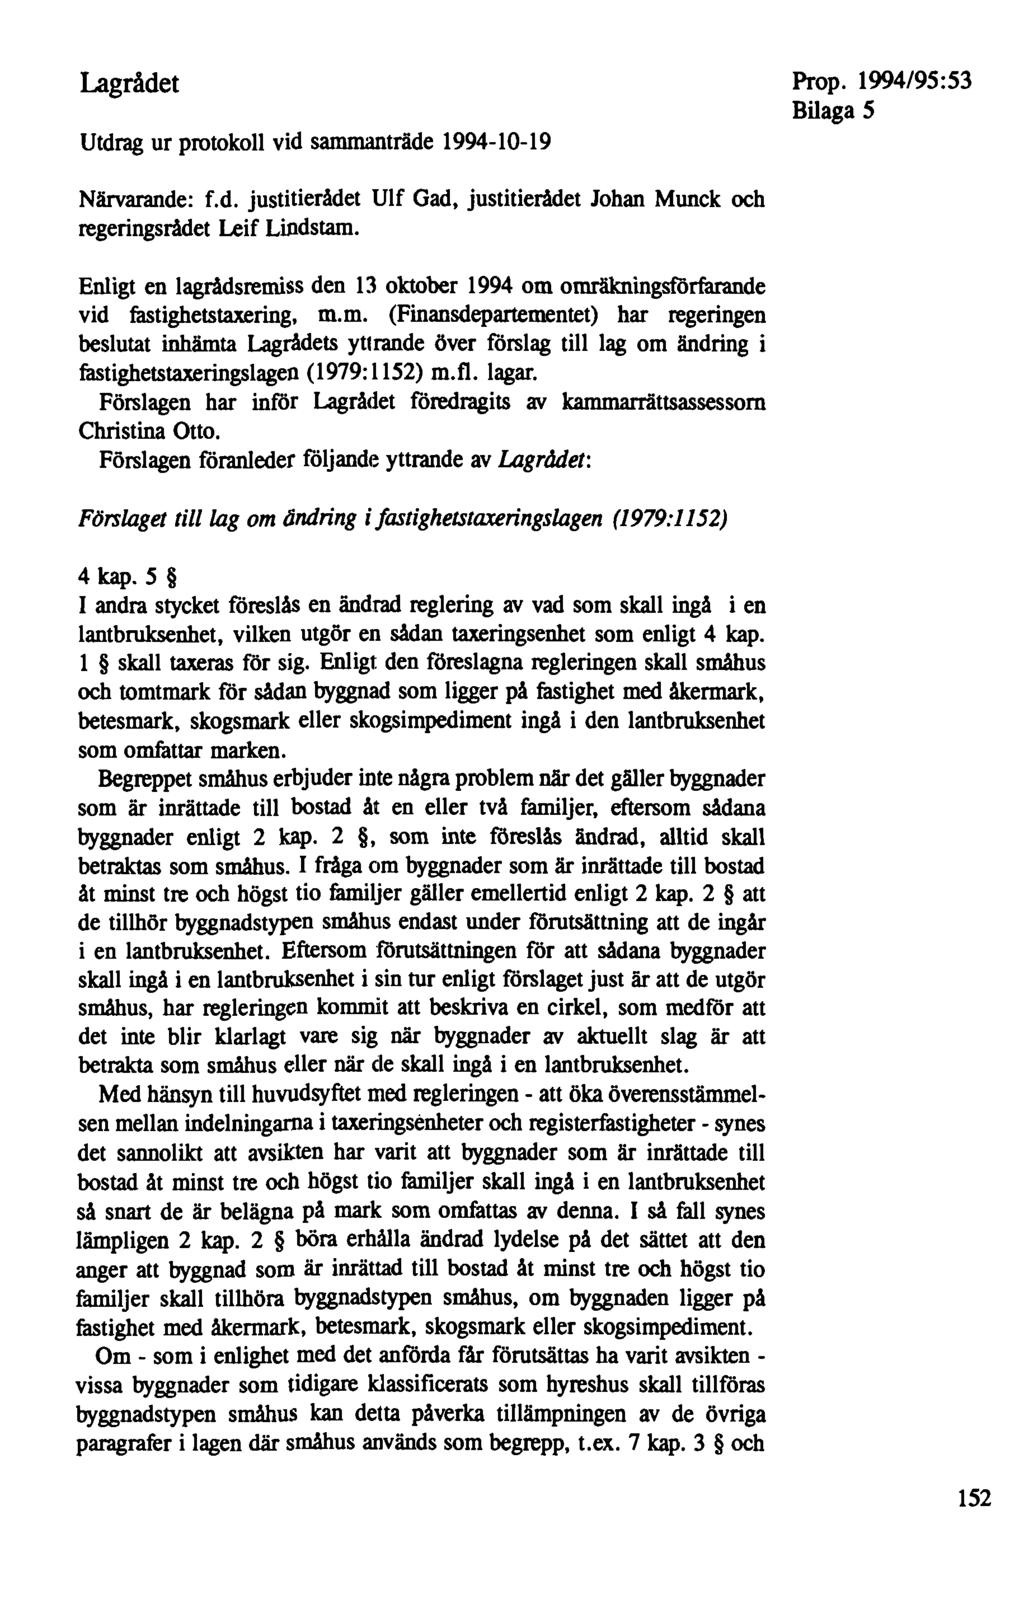 Lagrådet Utdrag ur protokoll vid sammanträde 1994-10-19 Bilaga 5 Närvarande: f.d. justitierådet Ulf Gad, justitierådet Johan Munck och regeringsrådet Leif Lindstam.